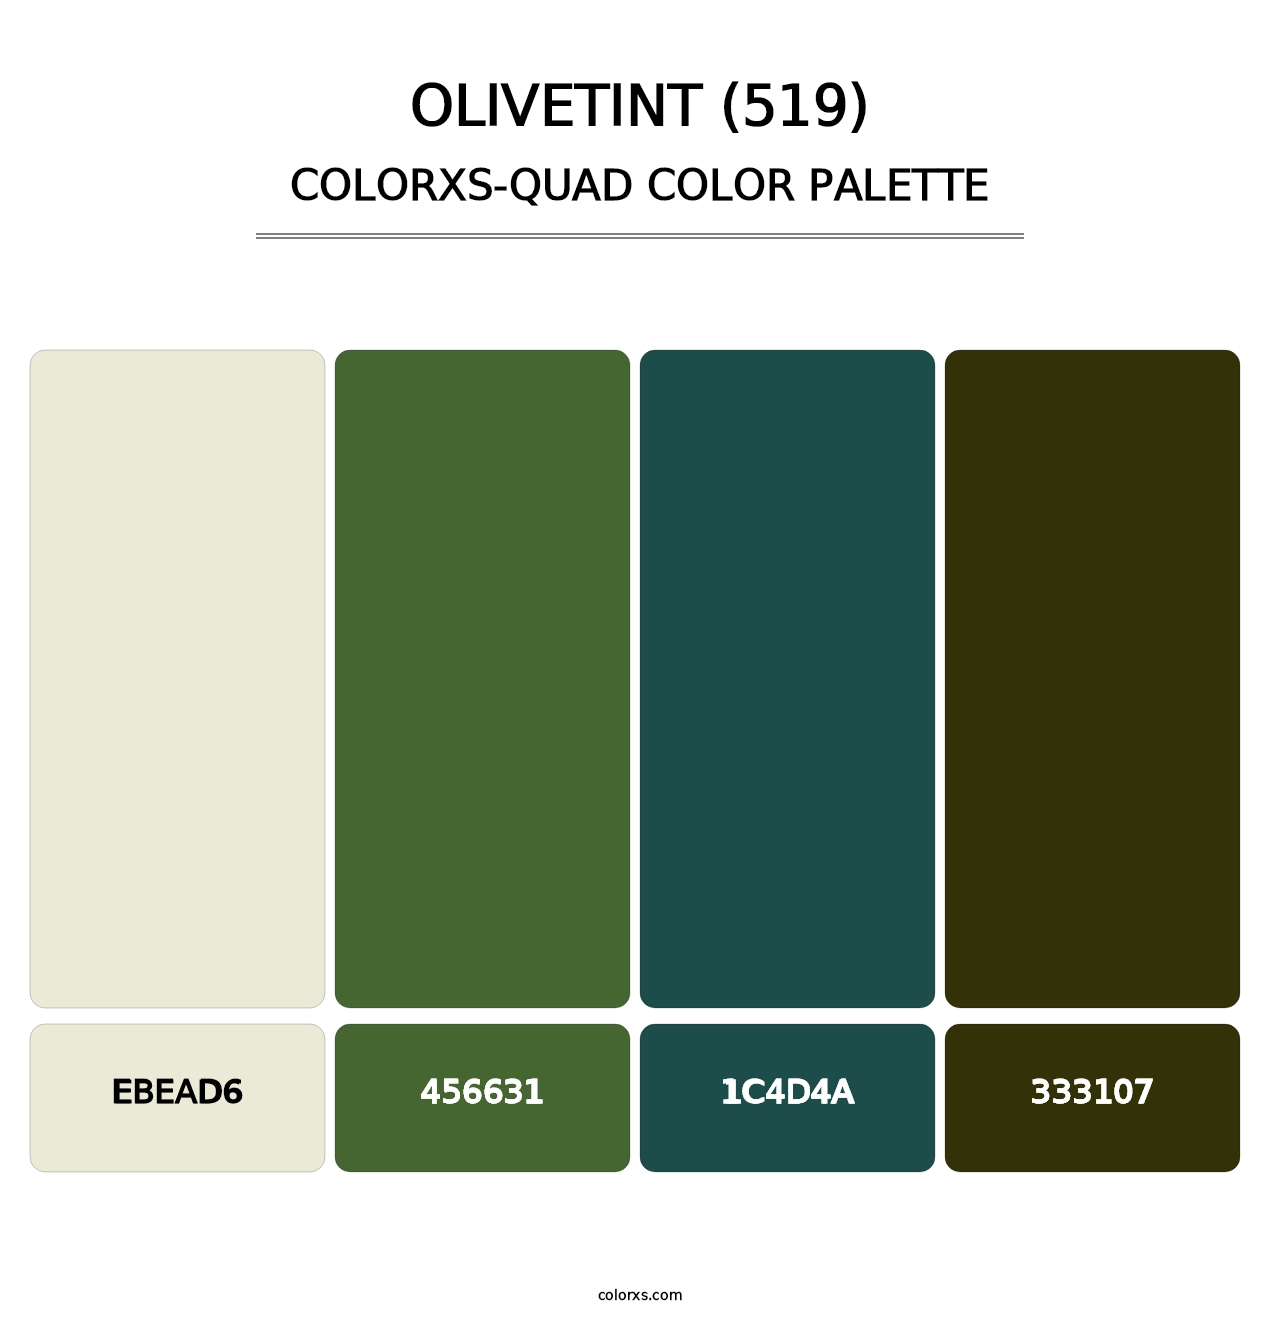 Olivetint (519) - Colorxs Quad Palette